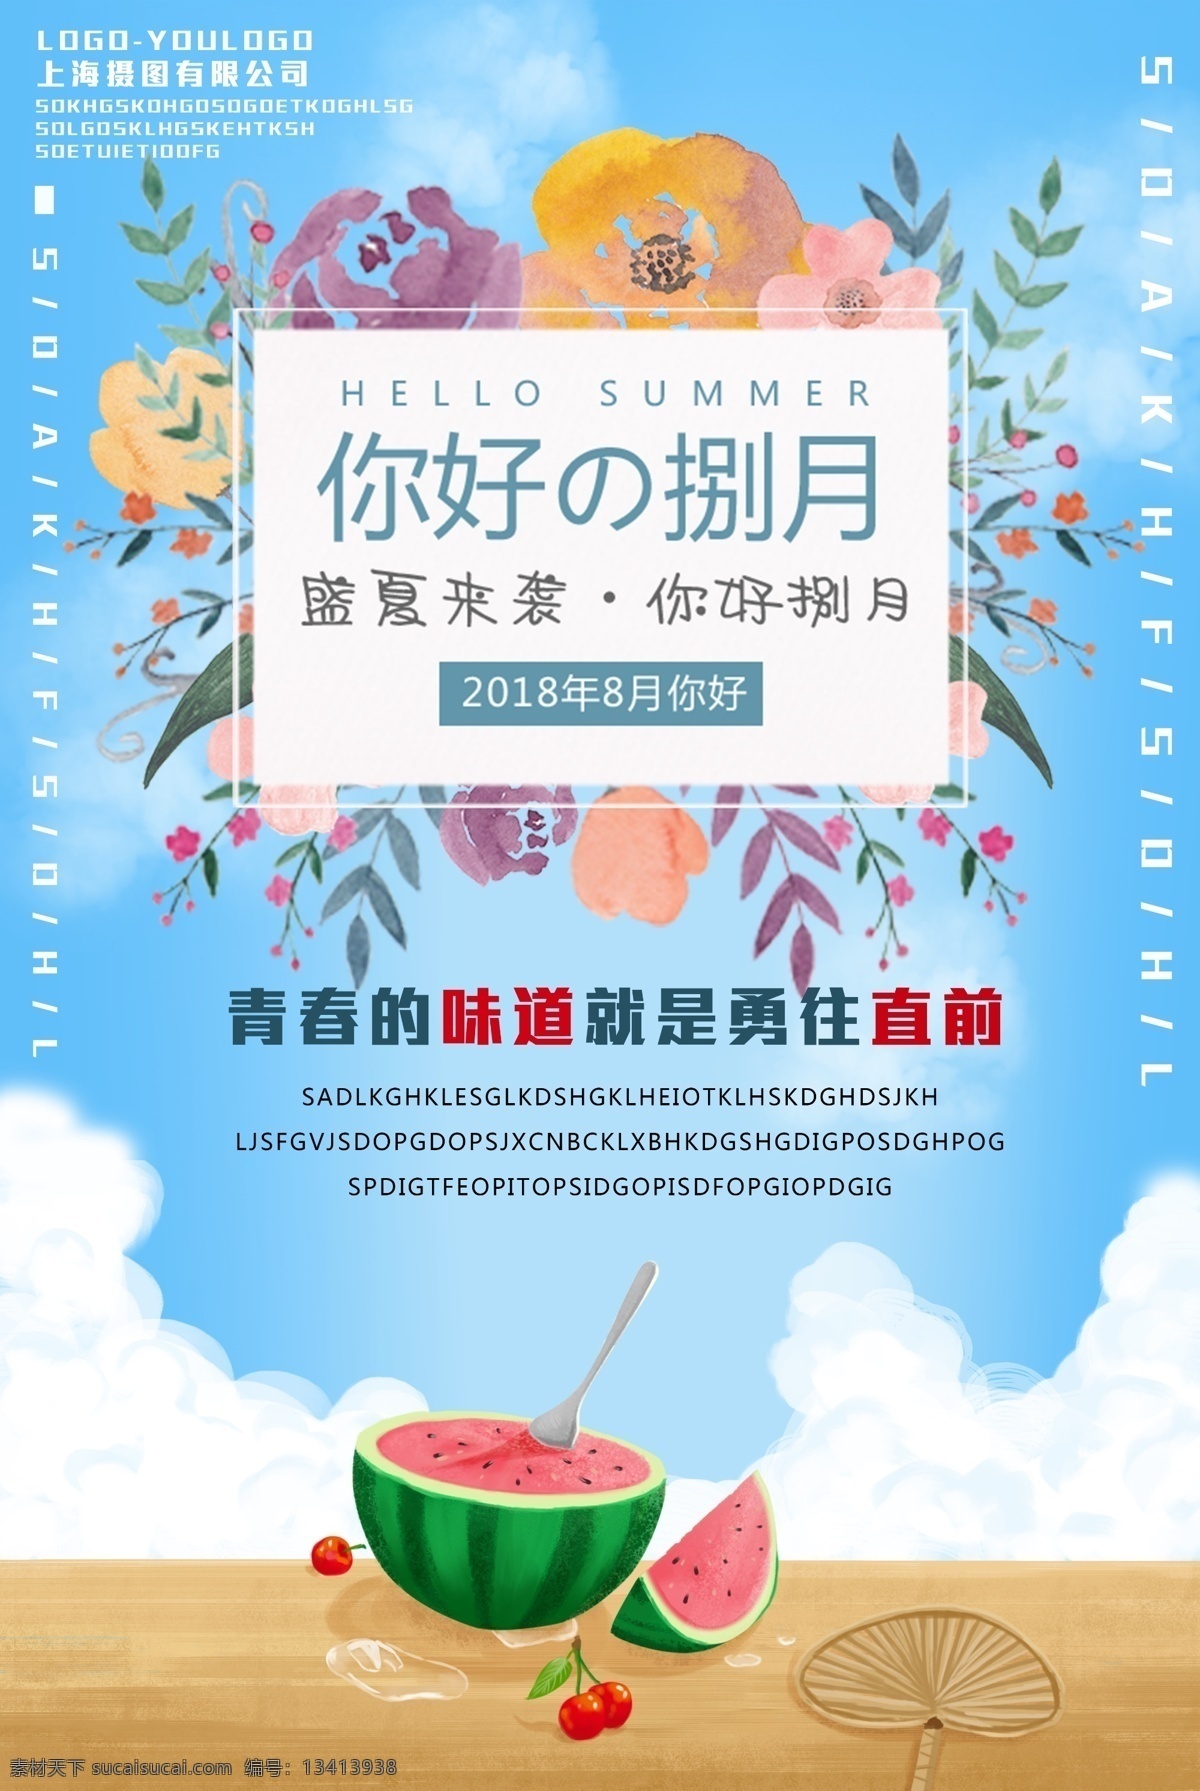 你好 八月 你好八月 你好捌月 你好8月 盛夏来袭 夏季海报 夏季插画海报